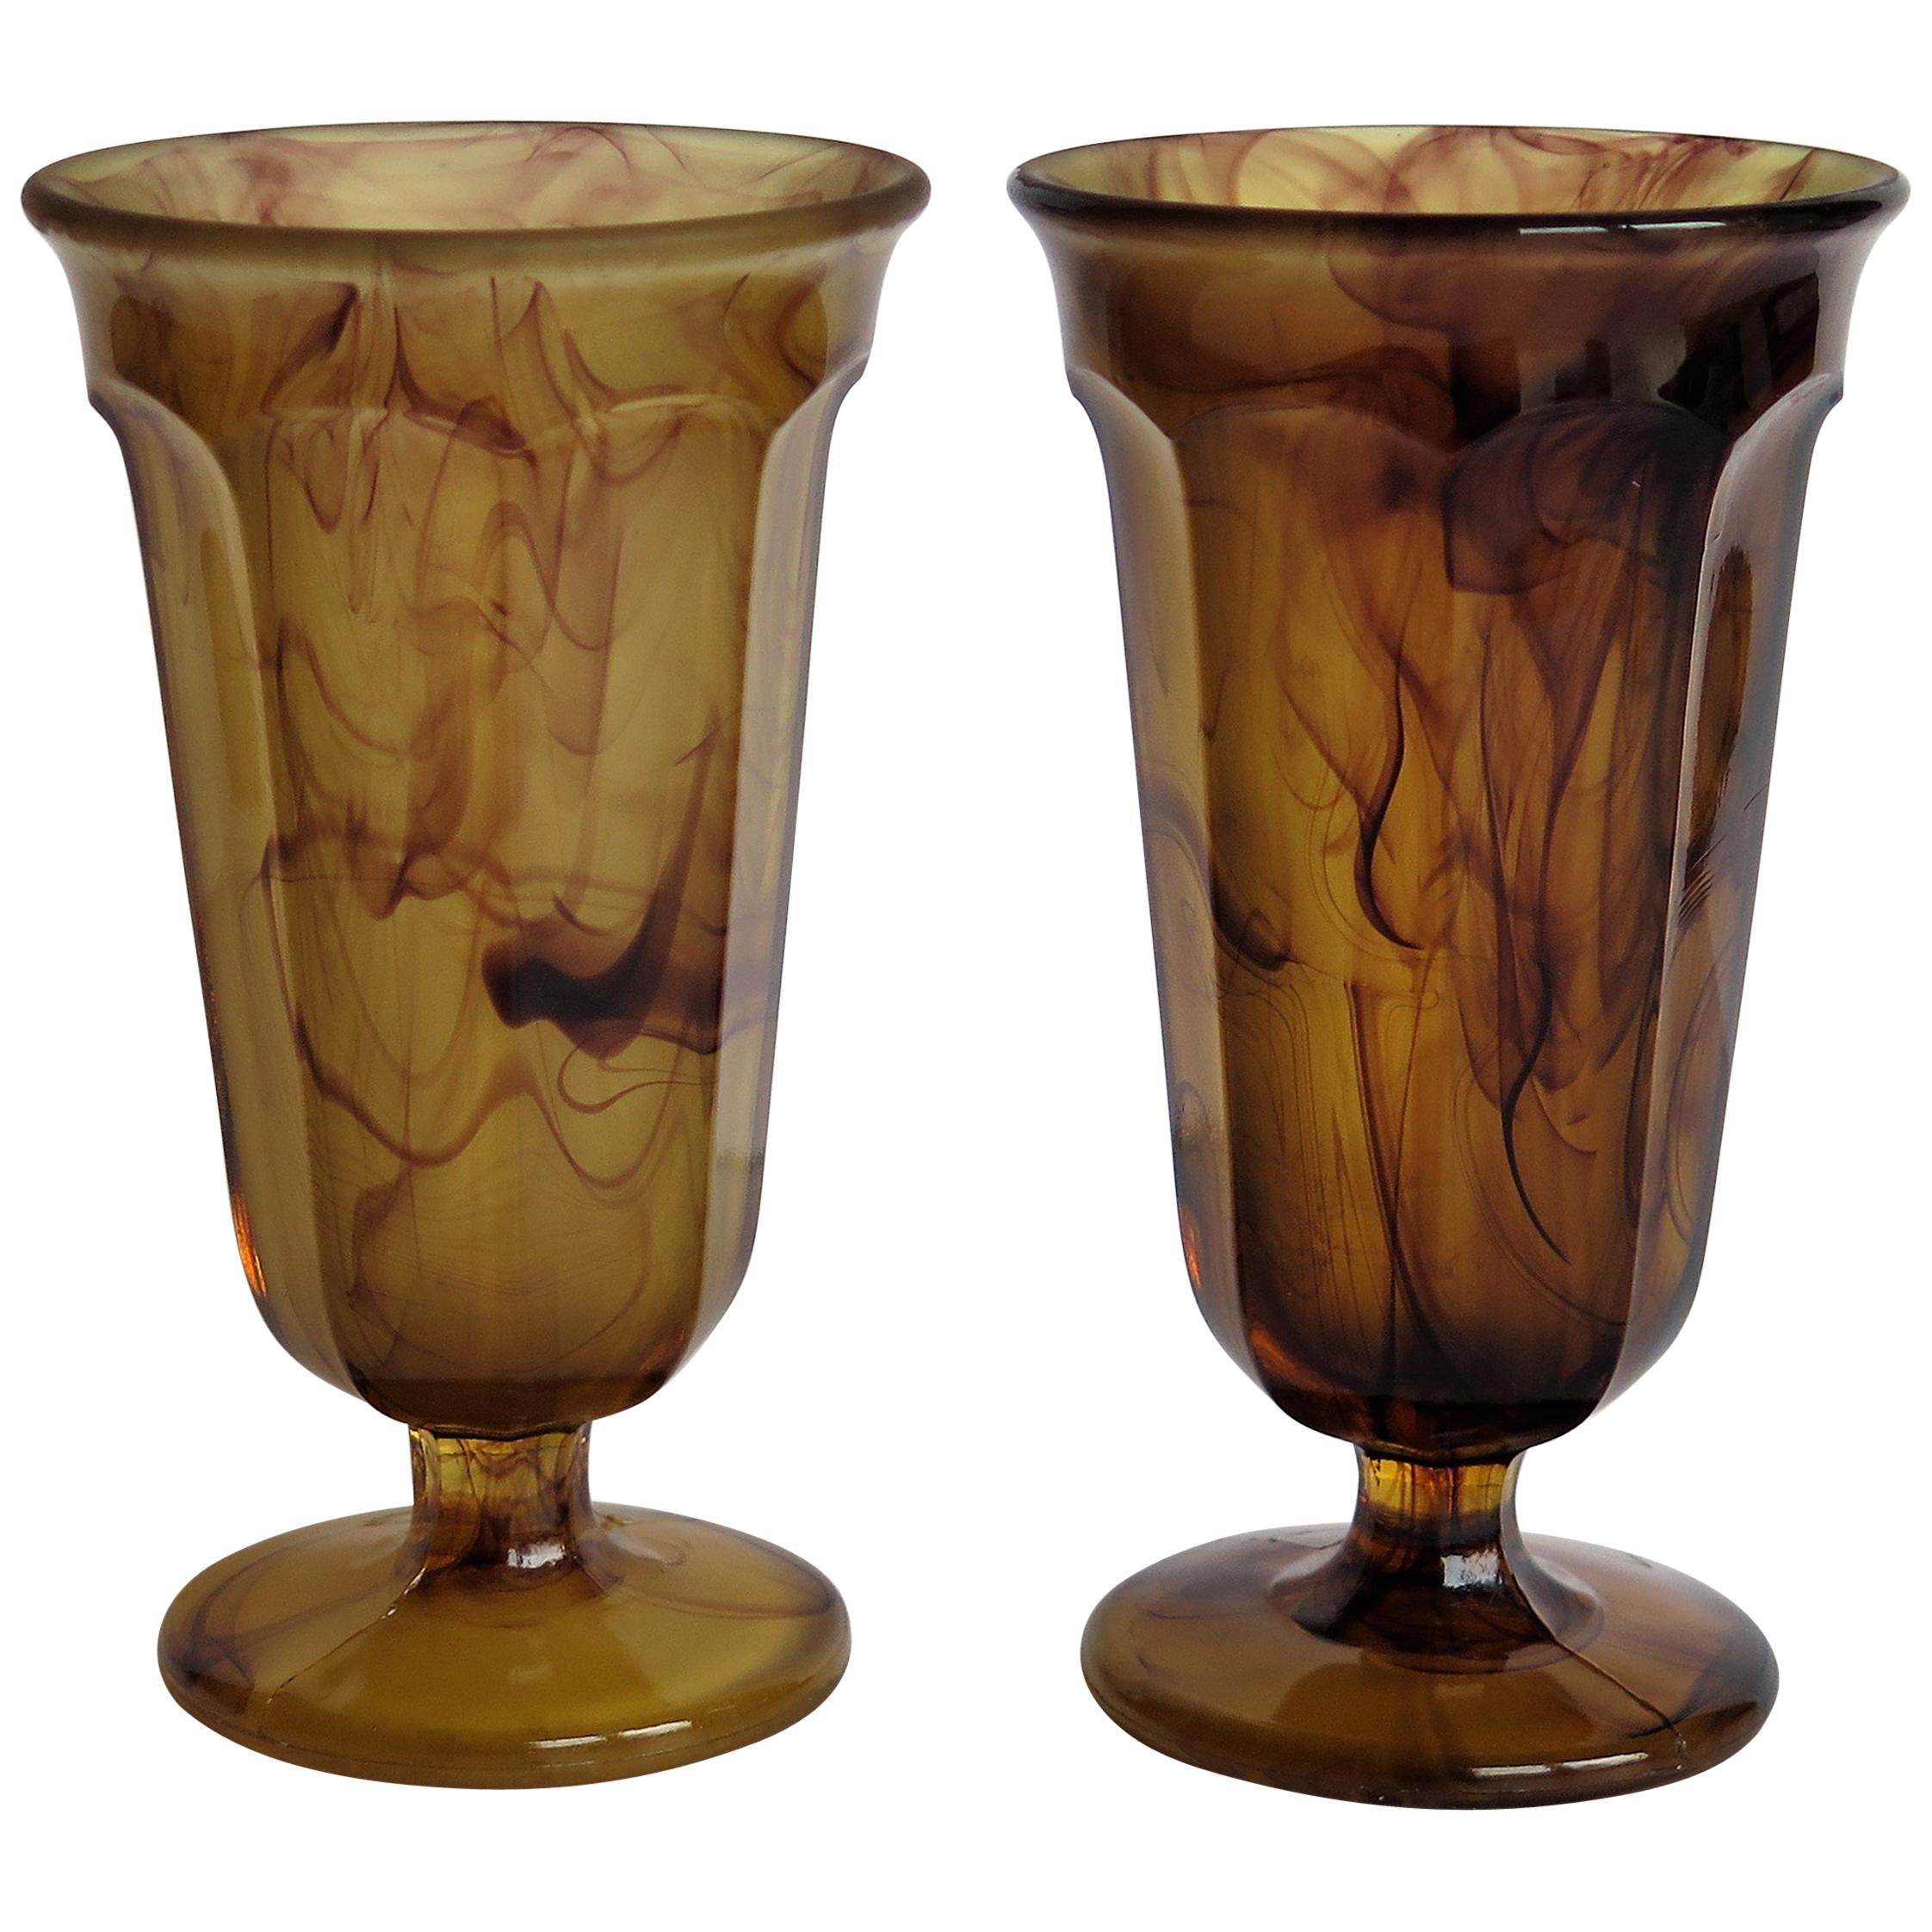 Paire de verres Art Déco Parfait par George Davidson Amber Cloud Glass, vers 1930